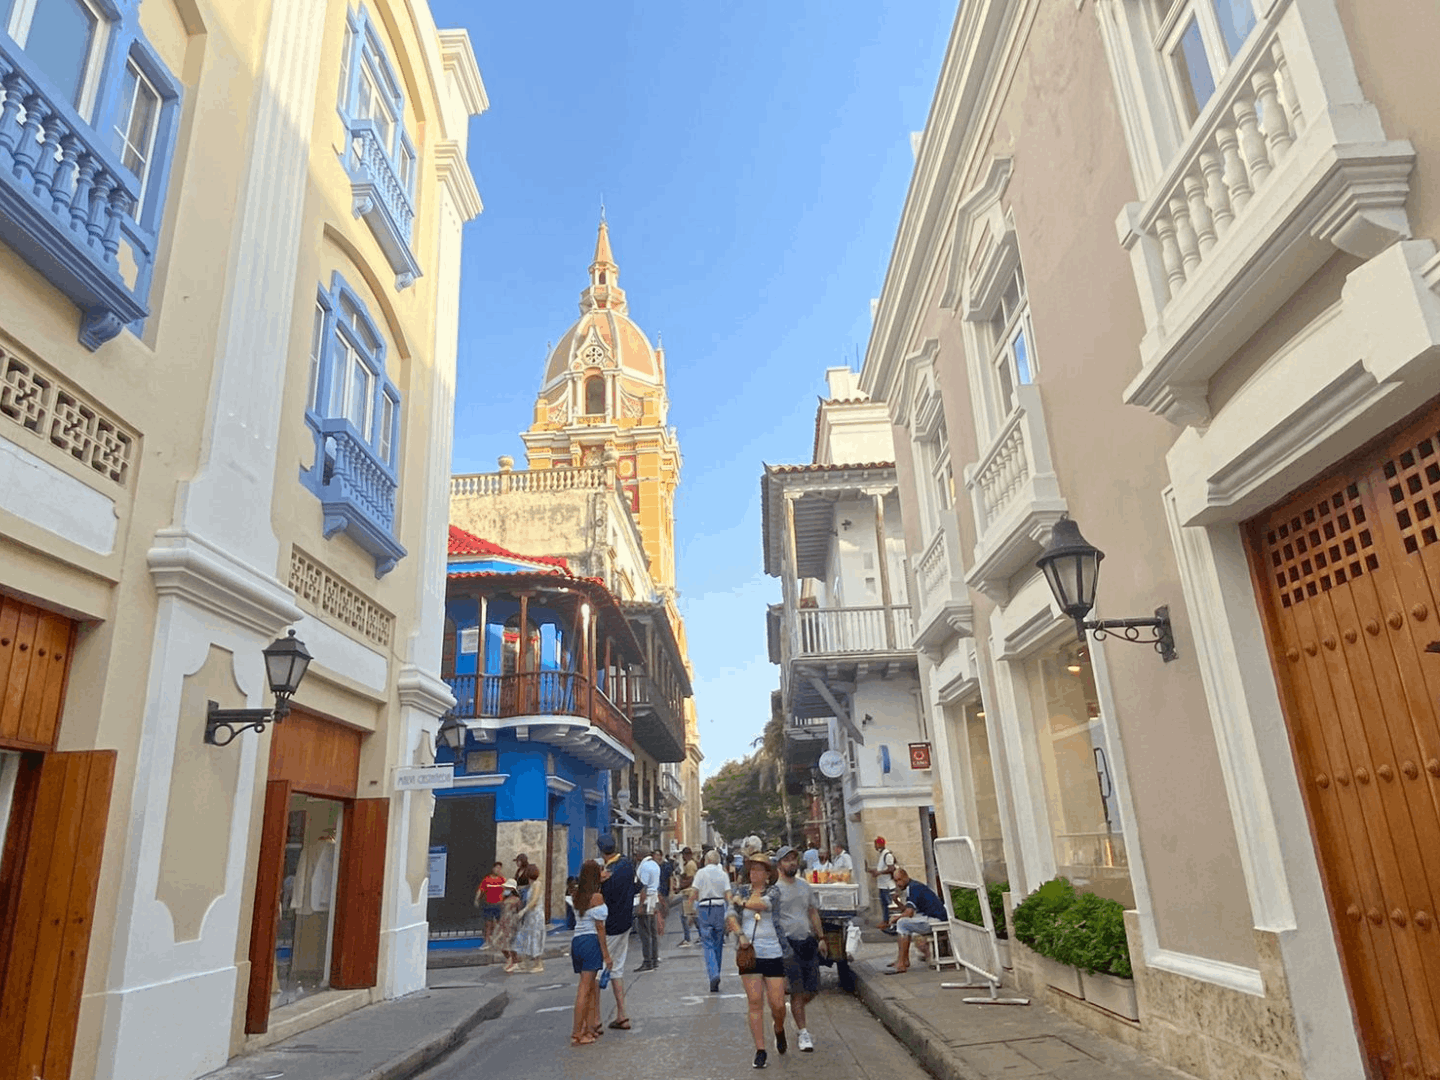 Ultimi momenti a Cartagena, fine dell'esperienza e l'inizio dei ricordi